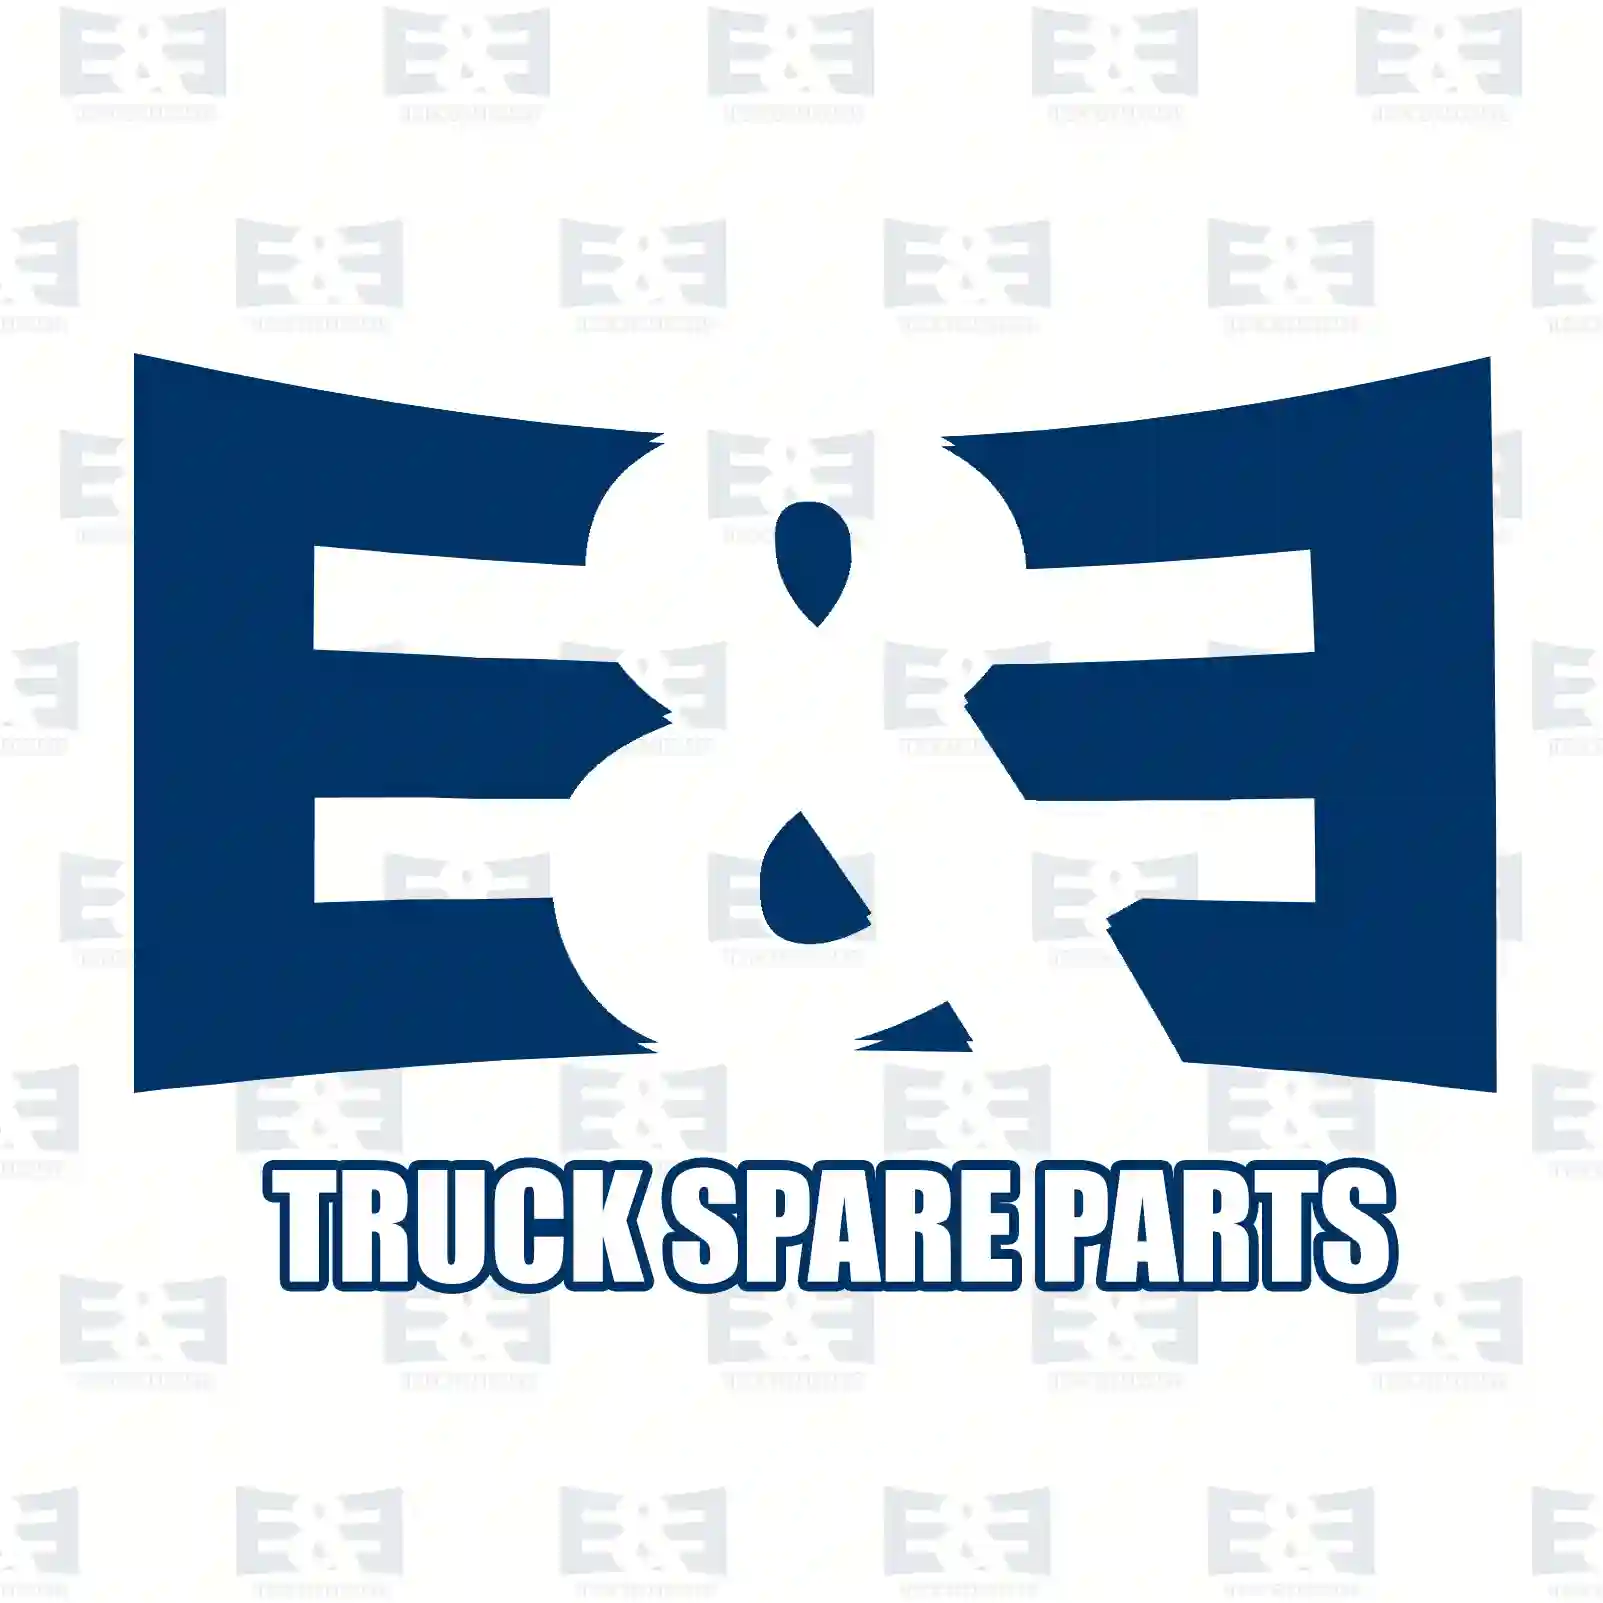 Clutch servo, 2E2288891, 20812692, ZG30314-0008 ||  2E2288891 E&E Truck Spare Parts | Truck Spare Parts, Auotomotive Spare Parts Clutch servo, 2E2288891, 20812692, ZG30314-0008 ||  2E2288891 E&E Truck Spare Parts | Truck Spare Parts, Auotomotive Spare Parts